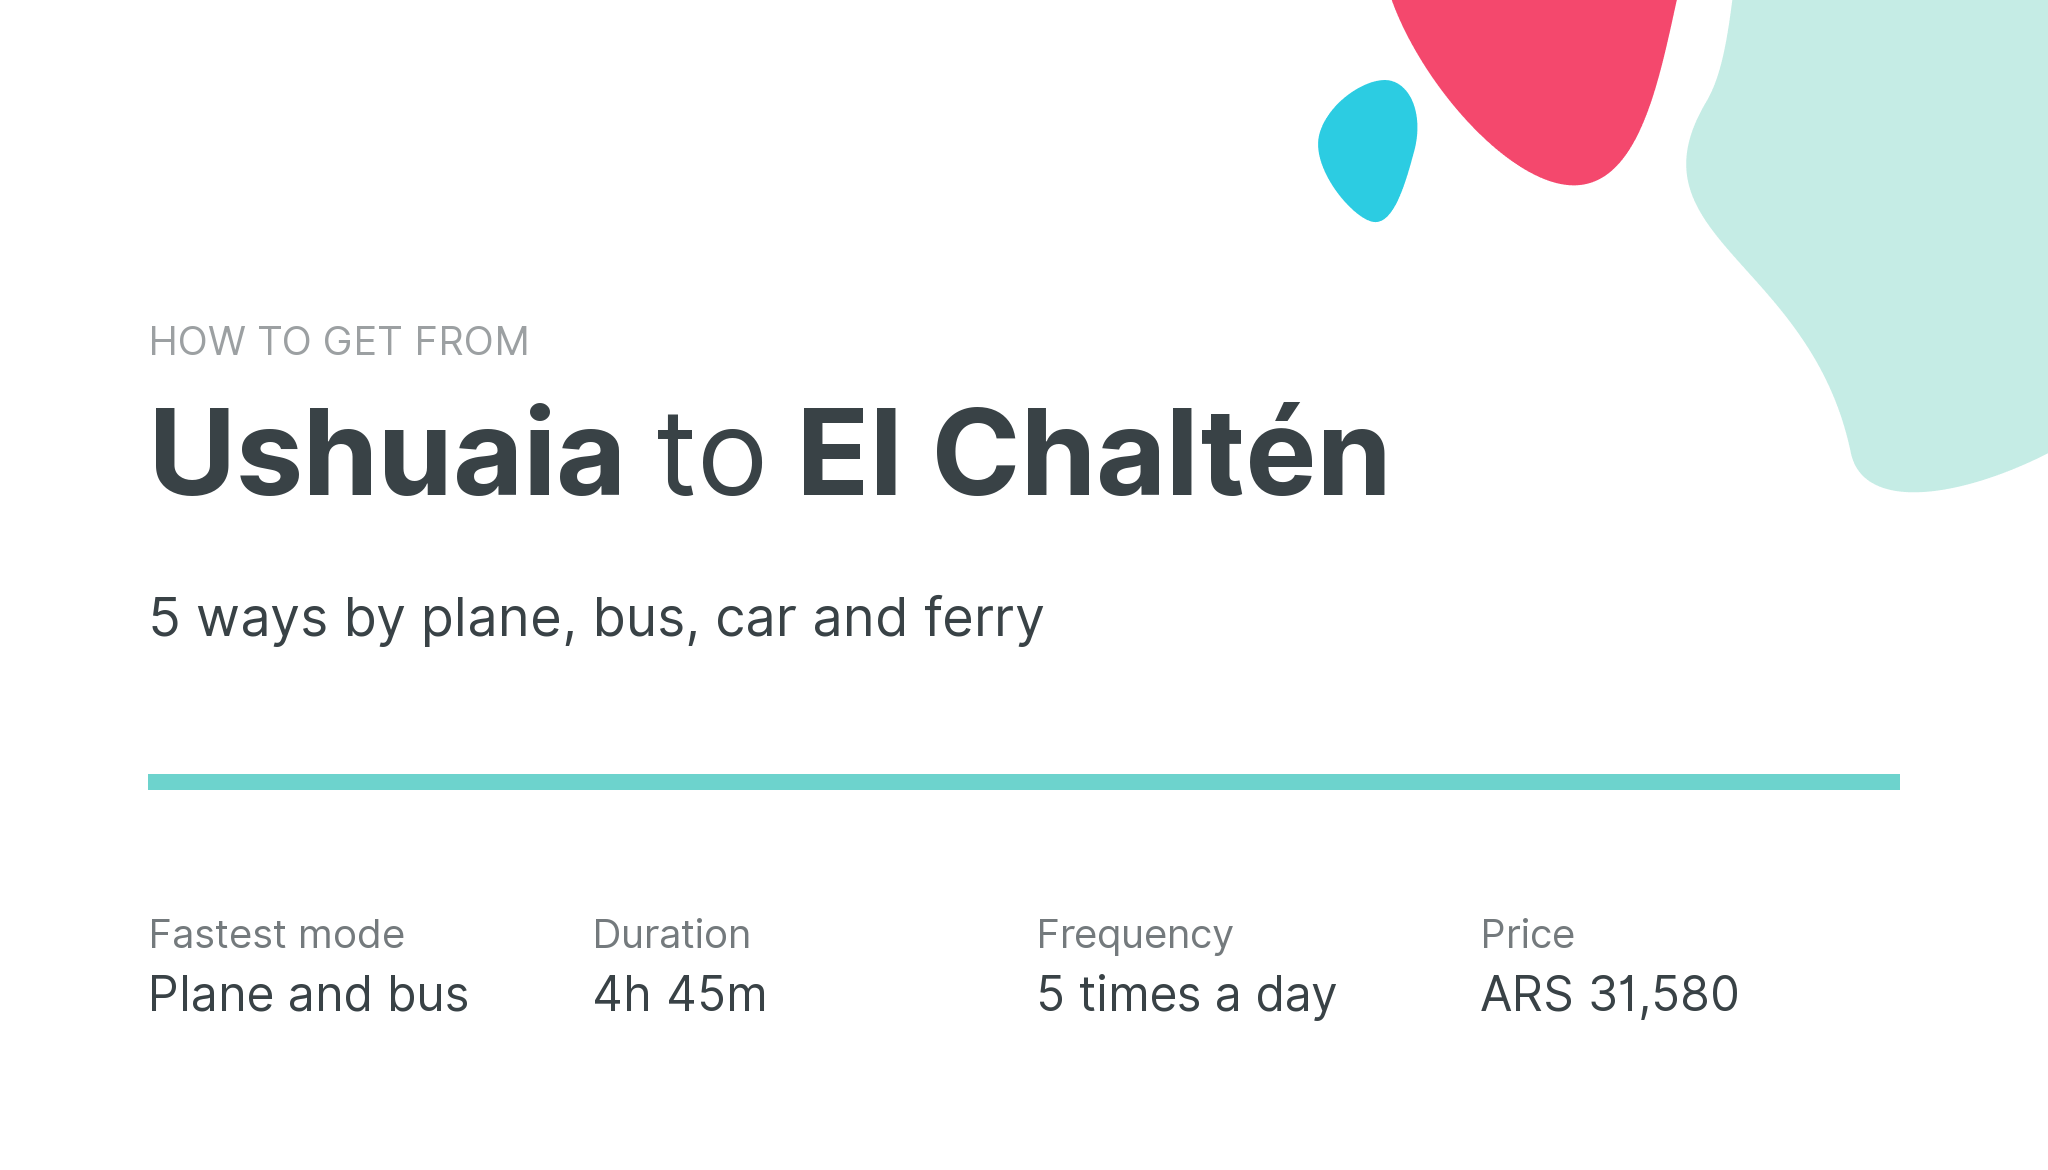 How do I get from Ushuaia to El Chaltén